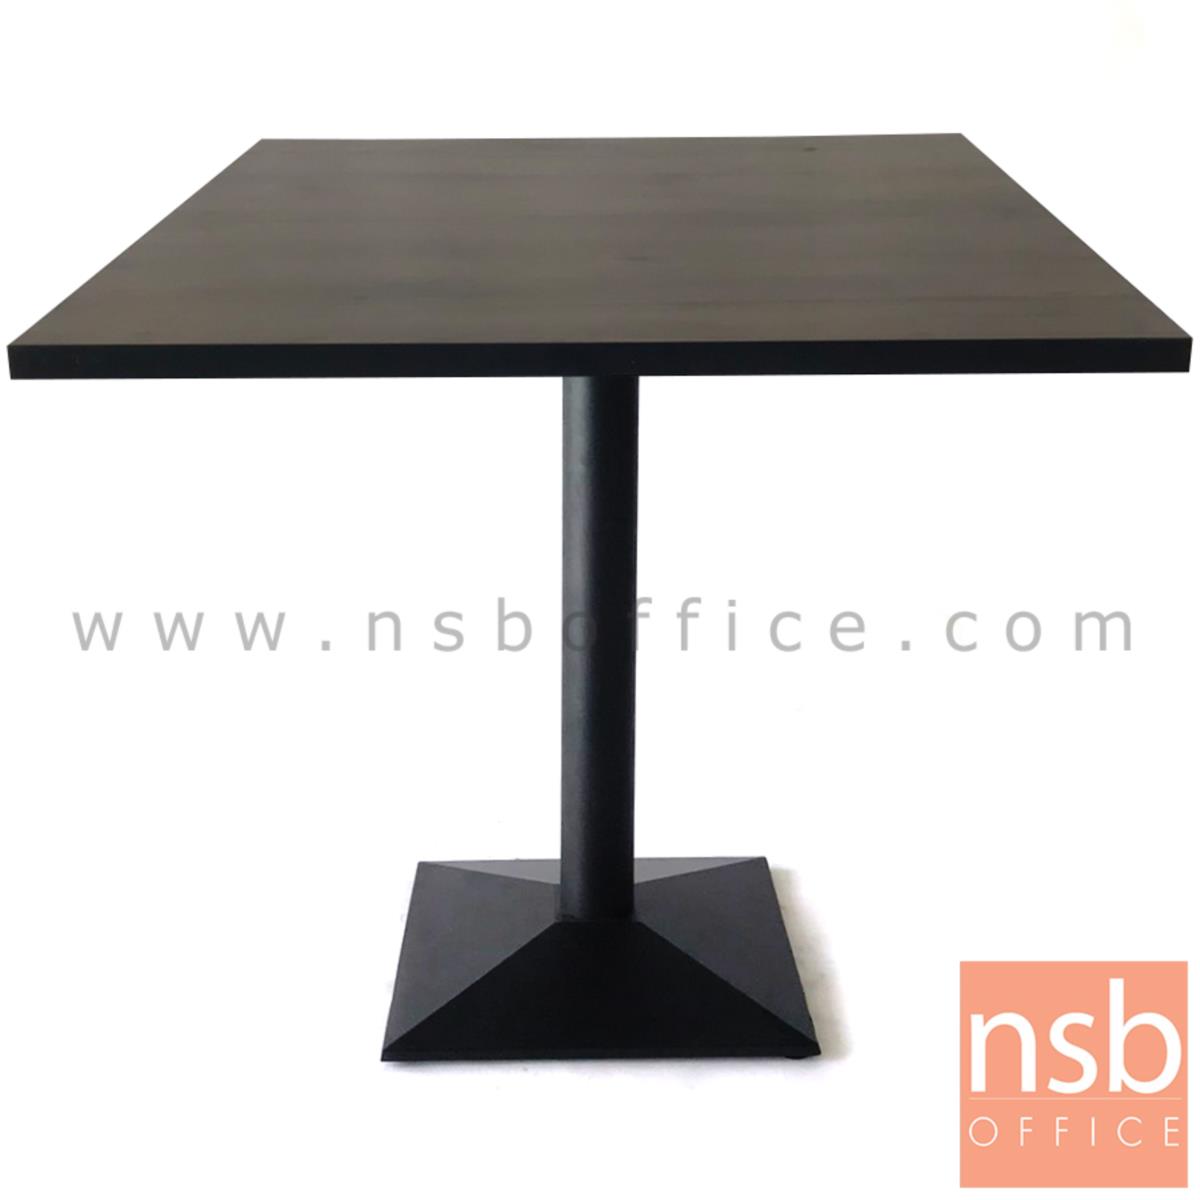 A14A169:โต๊ะบาร์ COFFEE รุ่น Lagerlof (ลอเกร์เลิฟ) ขนาด 60W ,70W ,80W ,60Di ,70Di ,80Di cm.   ขาเหล็กฐานพีระมิดสีดำ